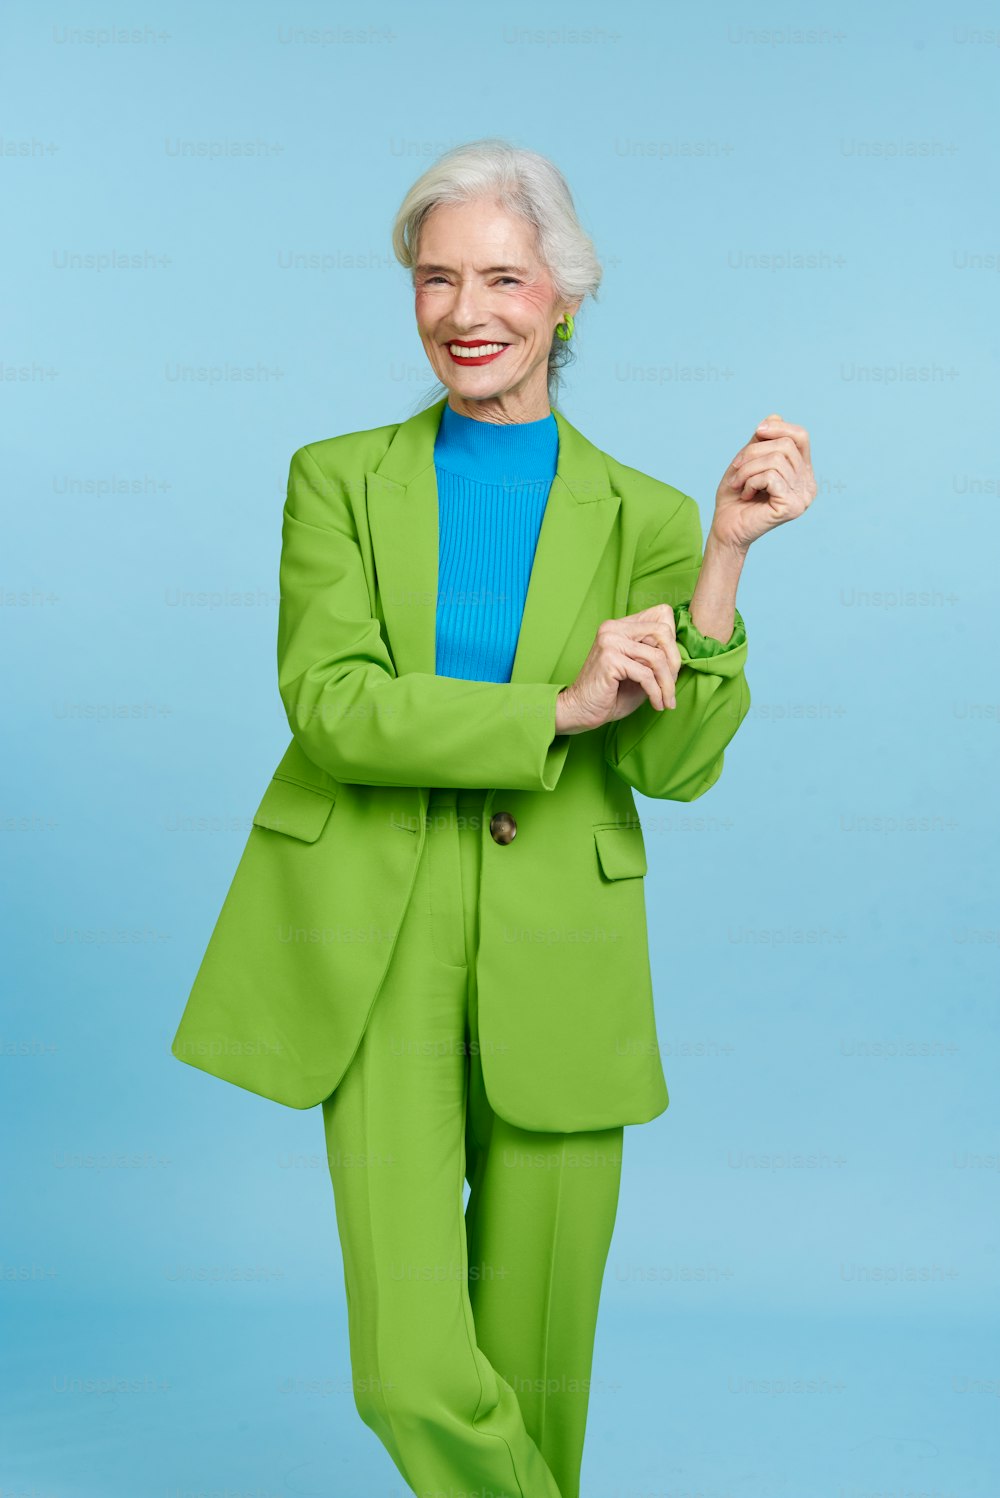 Une femme en costume vert posant pour une photo